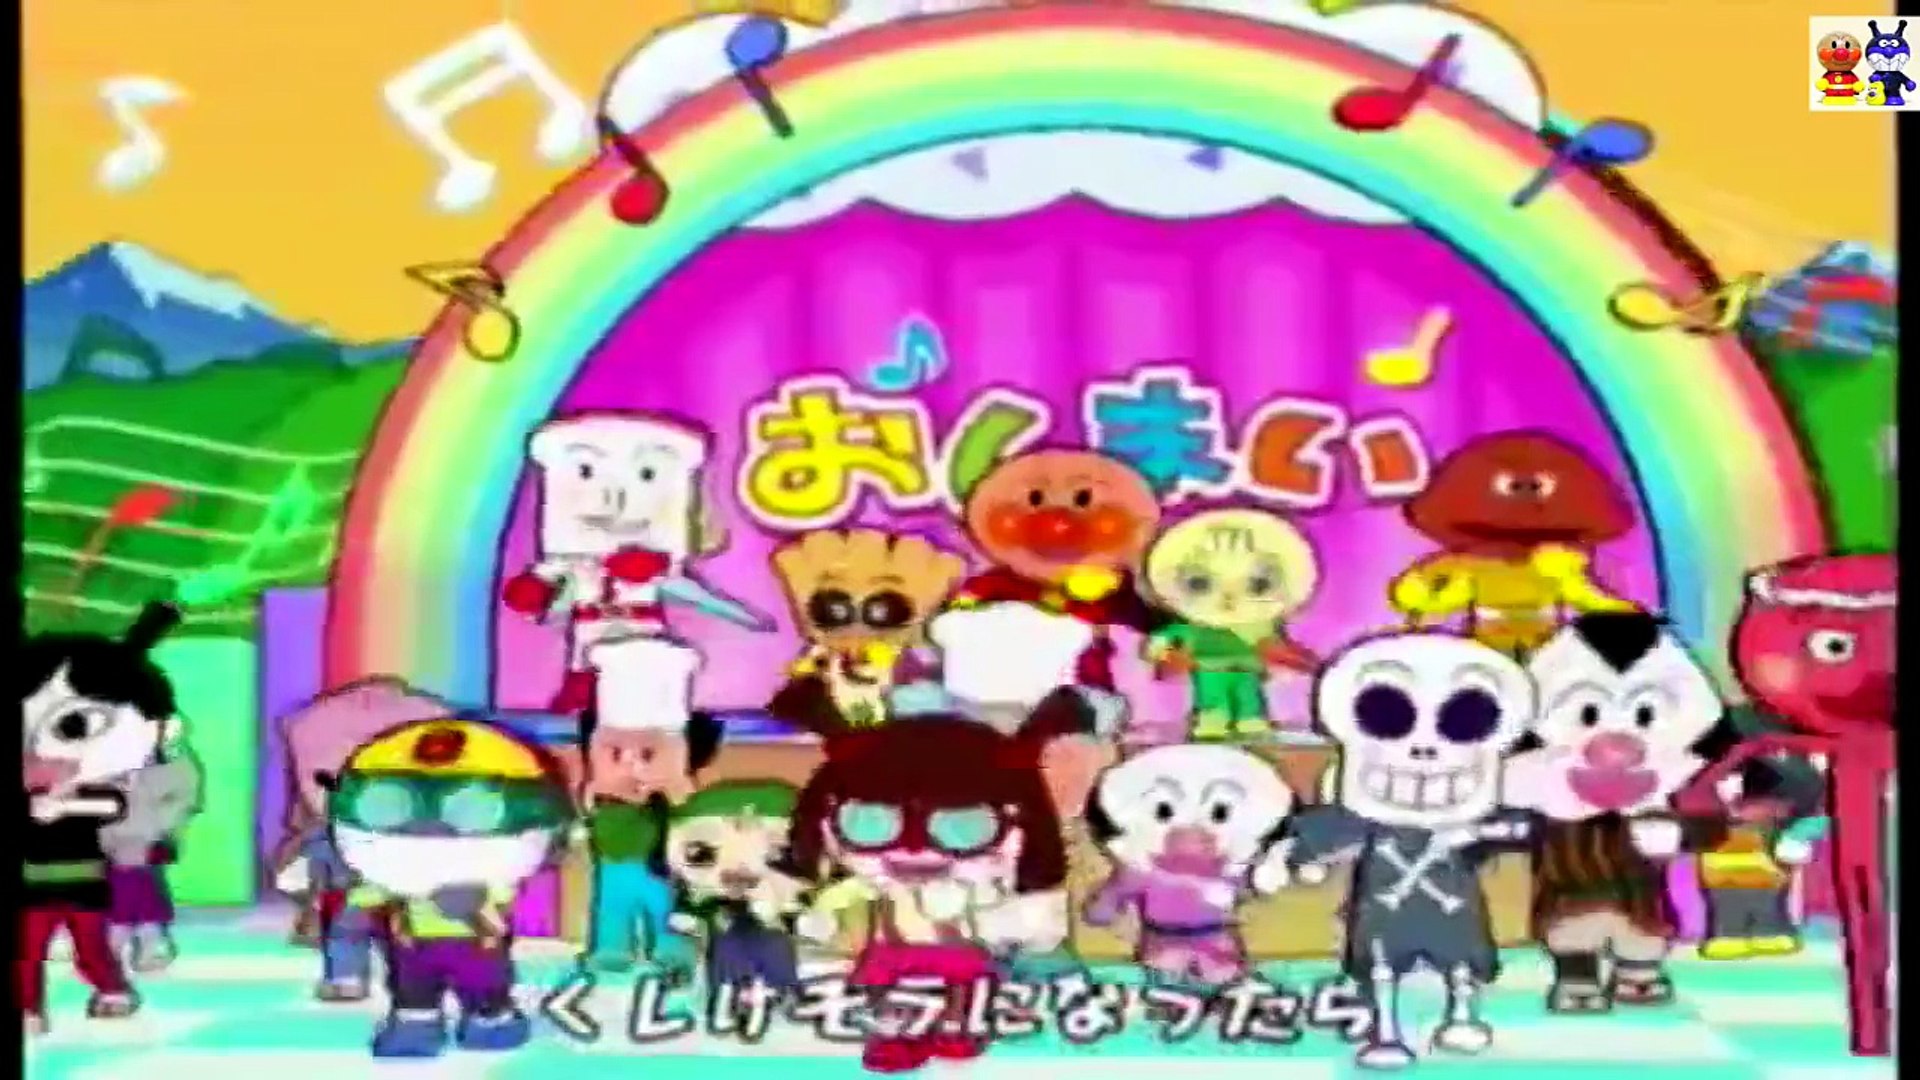 サンサンたいそう 歌 ダンス にこにこパーティ Wii エンディング Anpanman Japanese Game Video Dailymotion